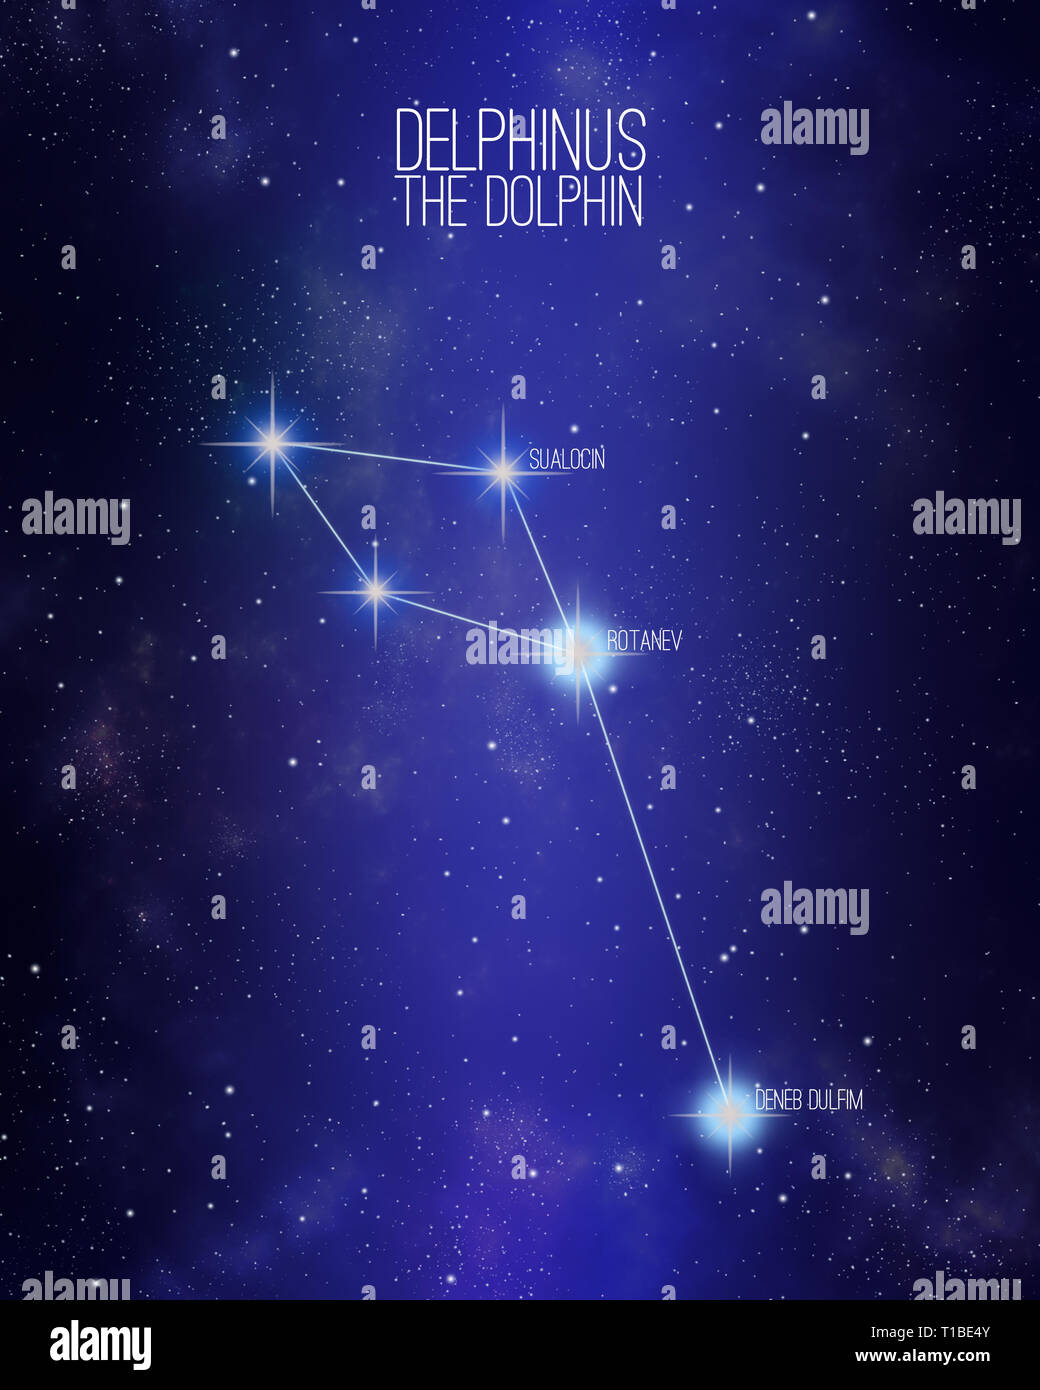 Delphinus la costellazione dolfin su un spazio stellato sfondo con i nomi dei suoi principali stelle. Foto Stock